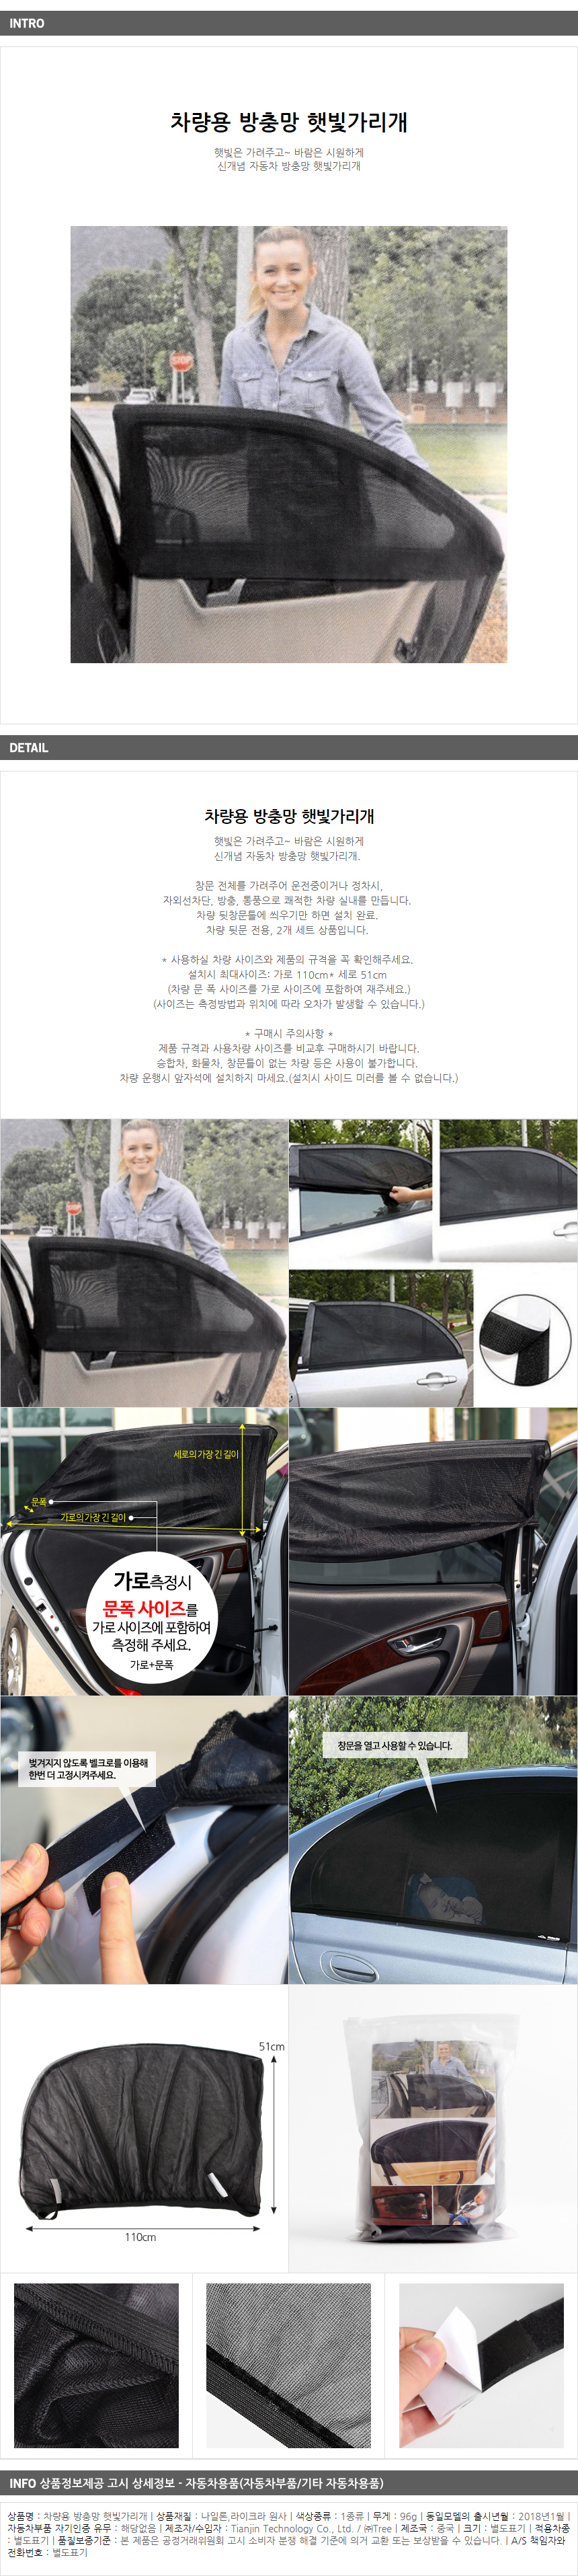 차량용 방충망 햇빛가리개 / 매장 홍보 사은 선쉐이드